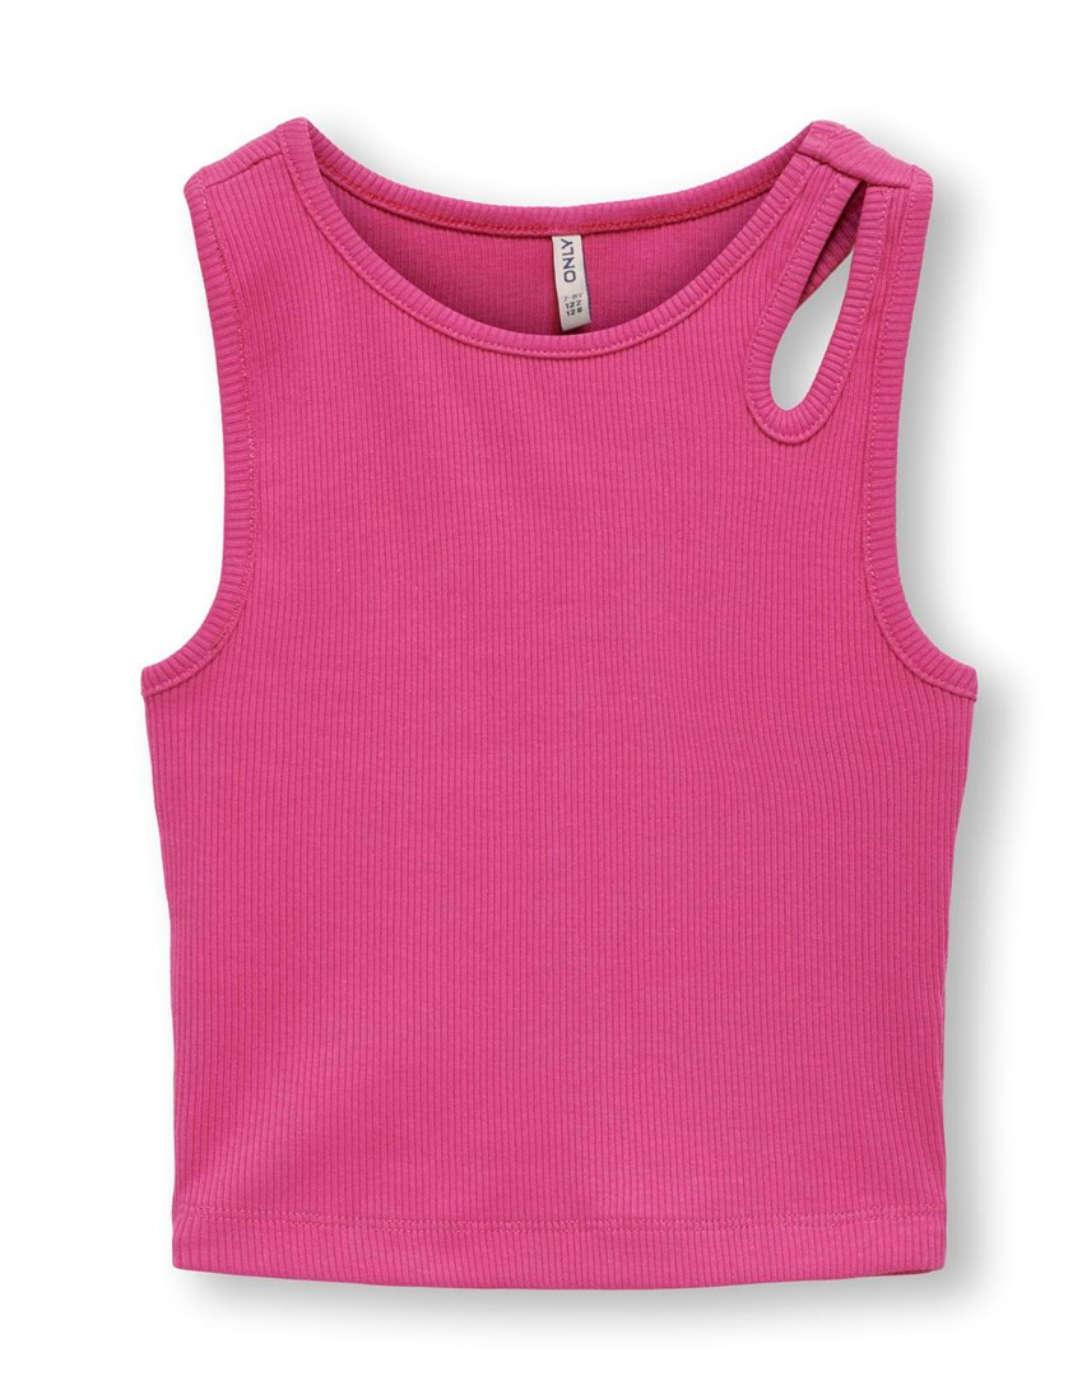 Camiseta tirantes Only Kids Messa rosa fucsia para niña